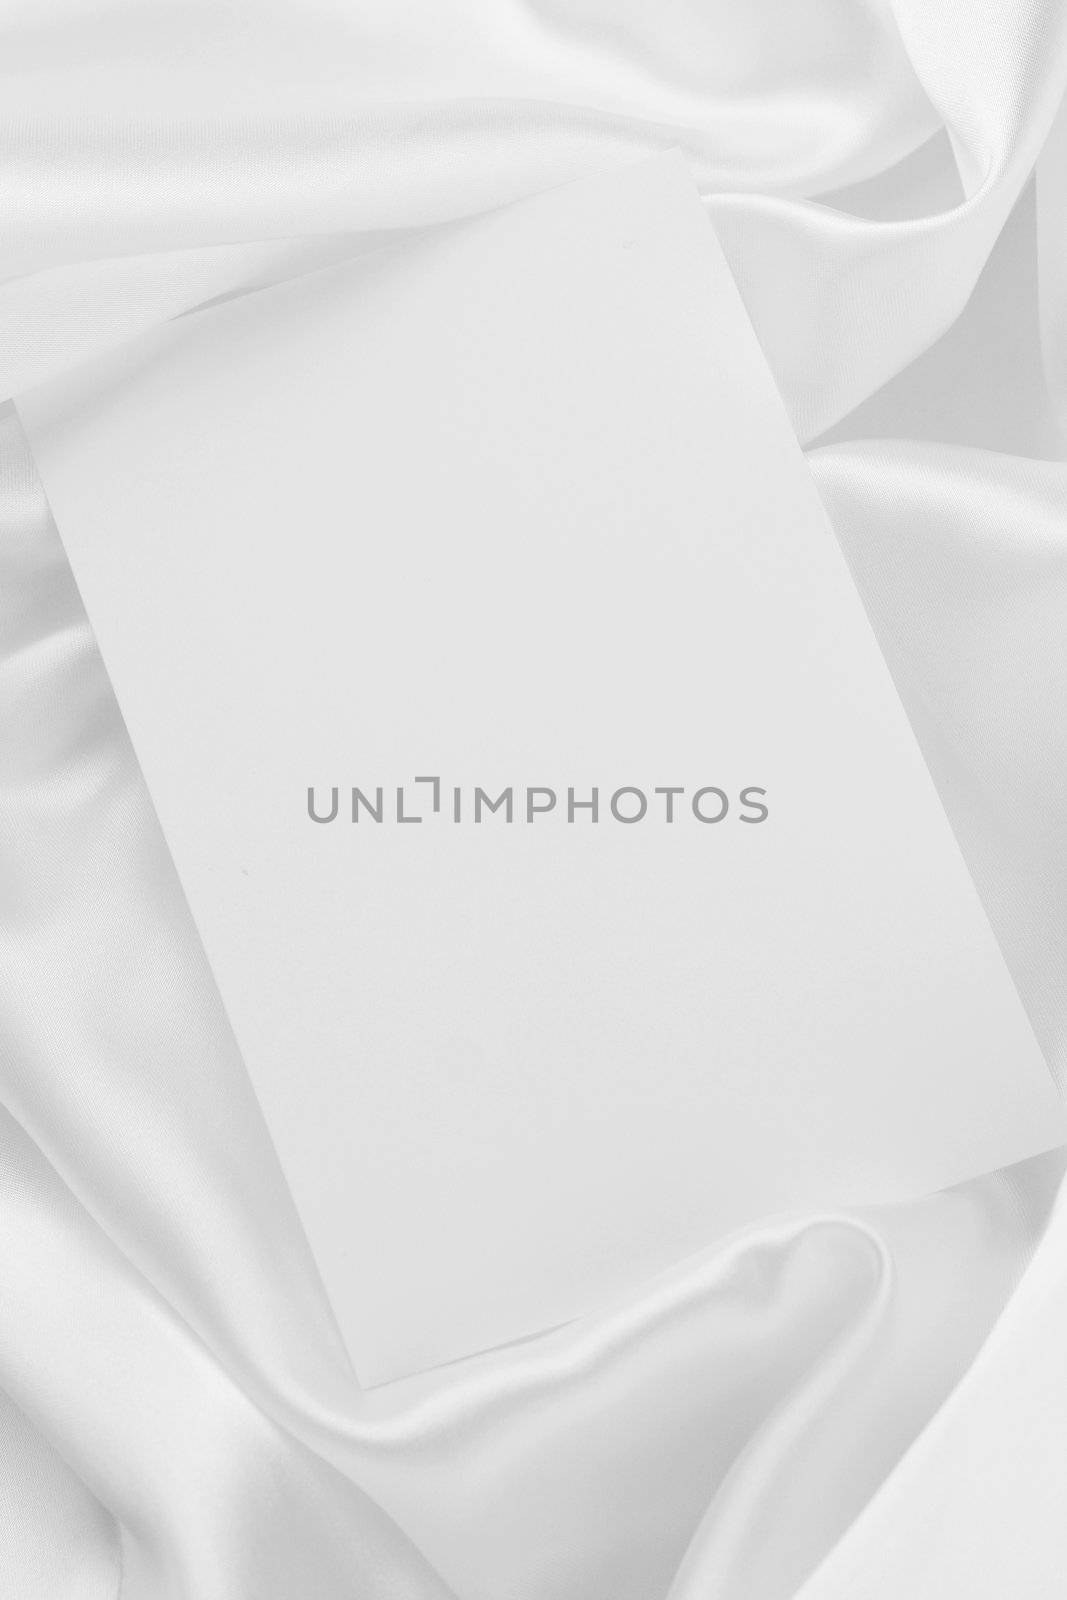 White card on elegant white satin cloth